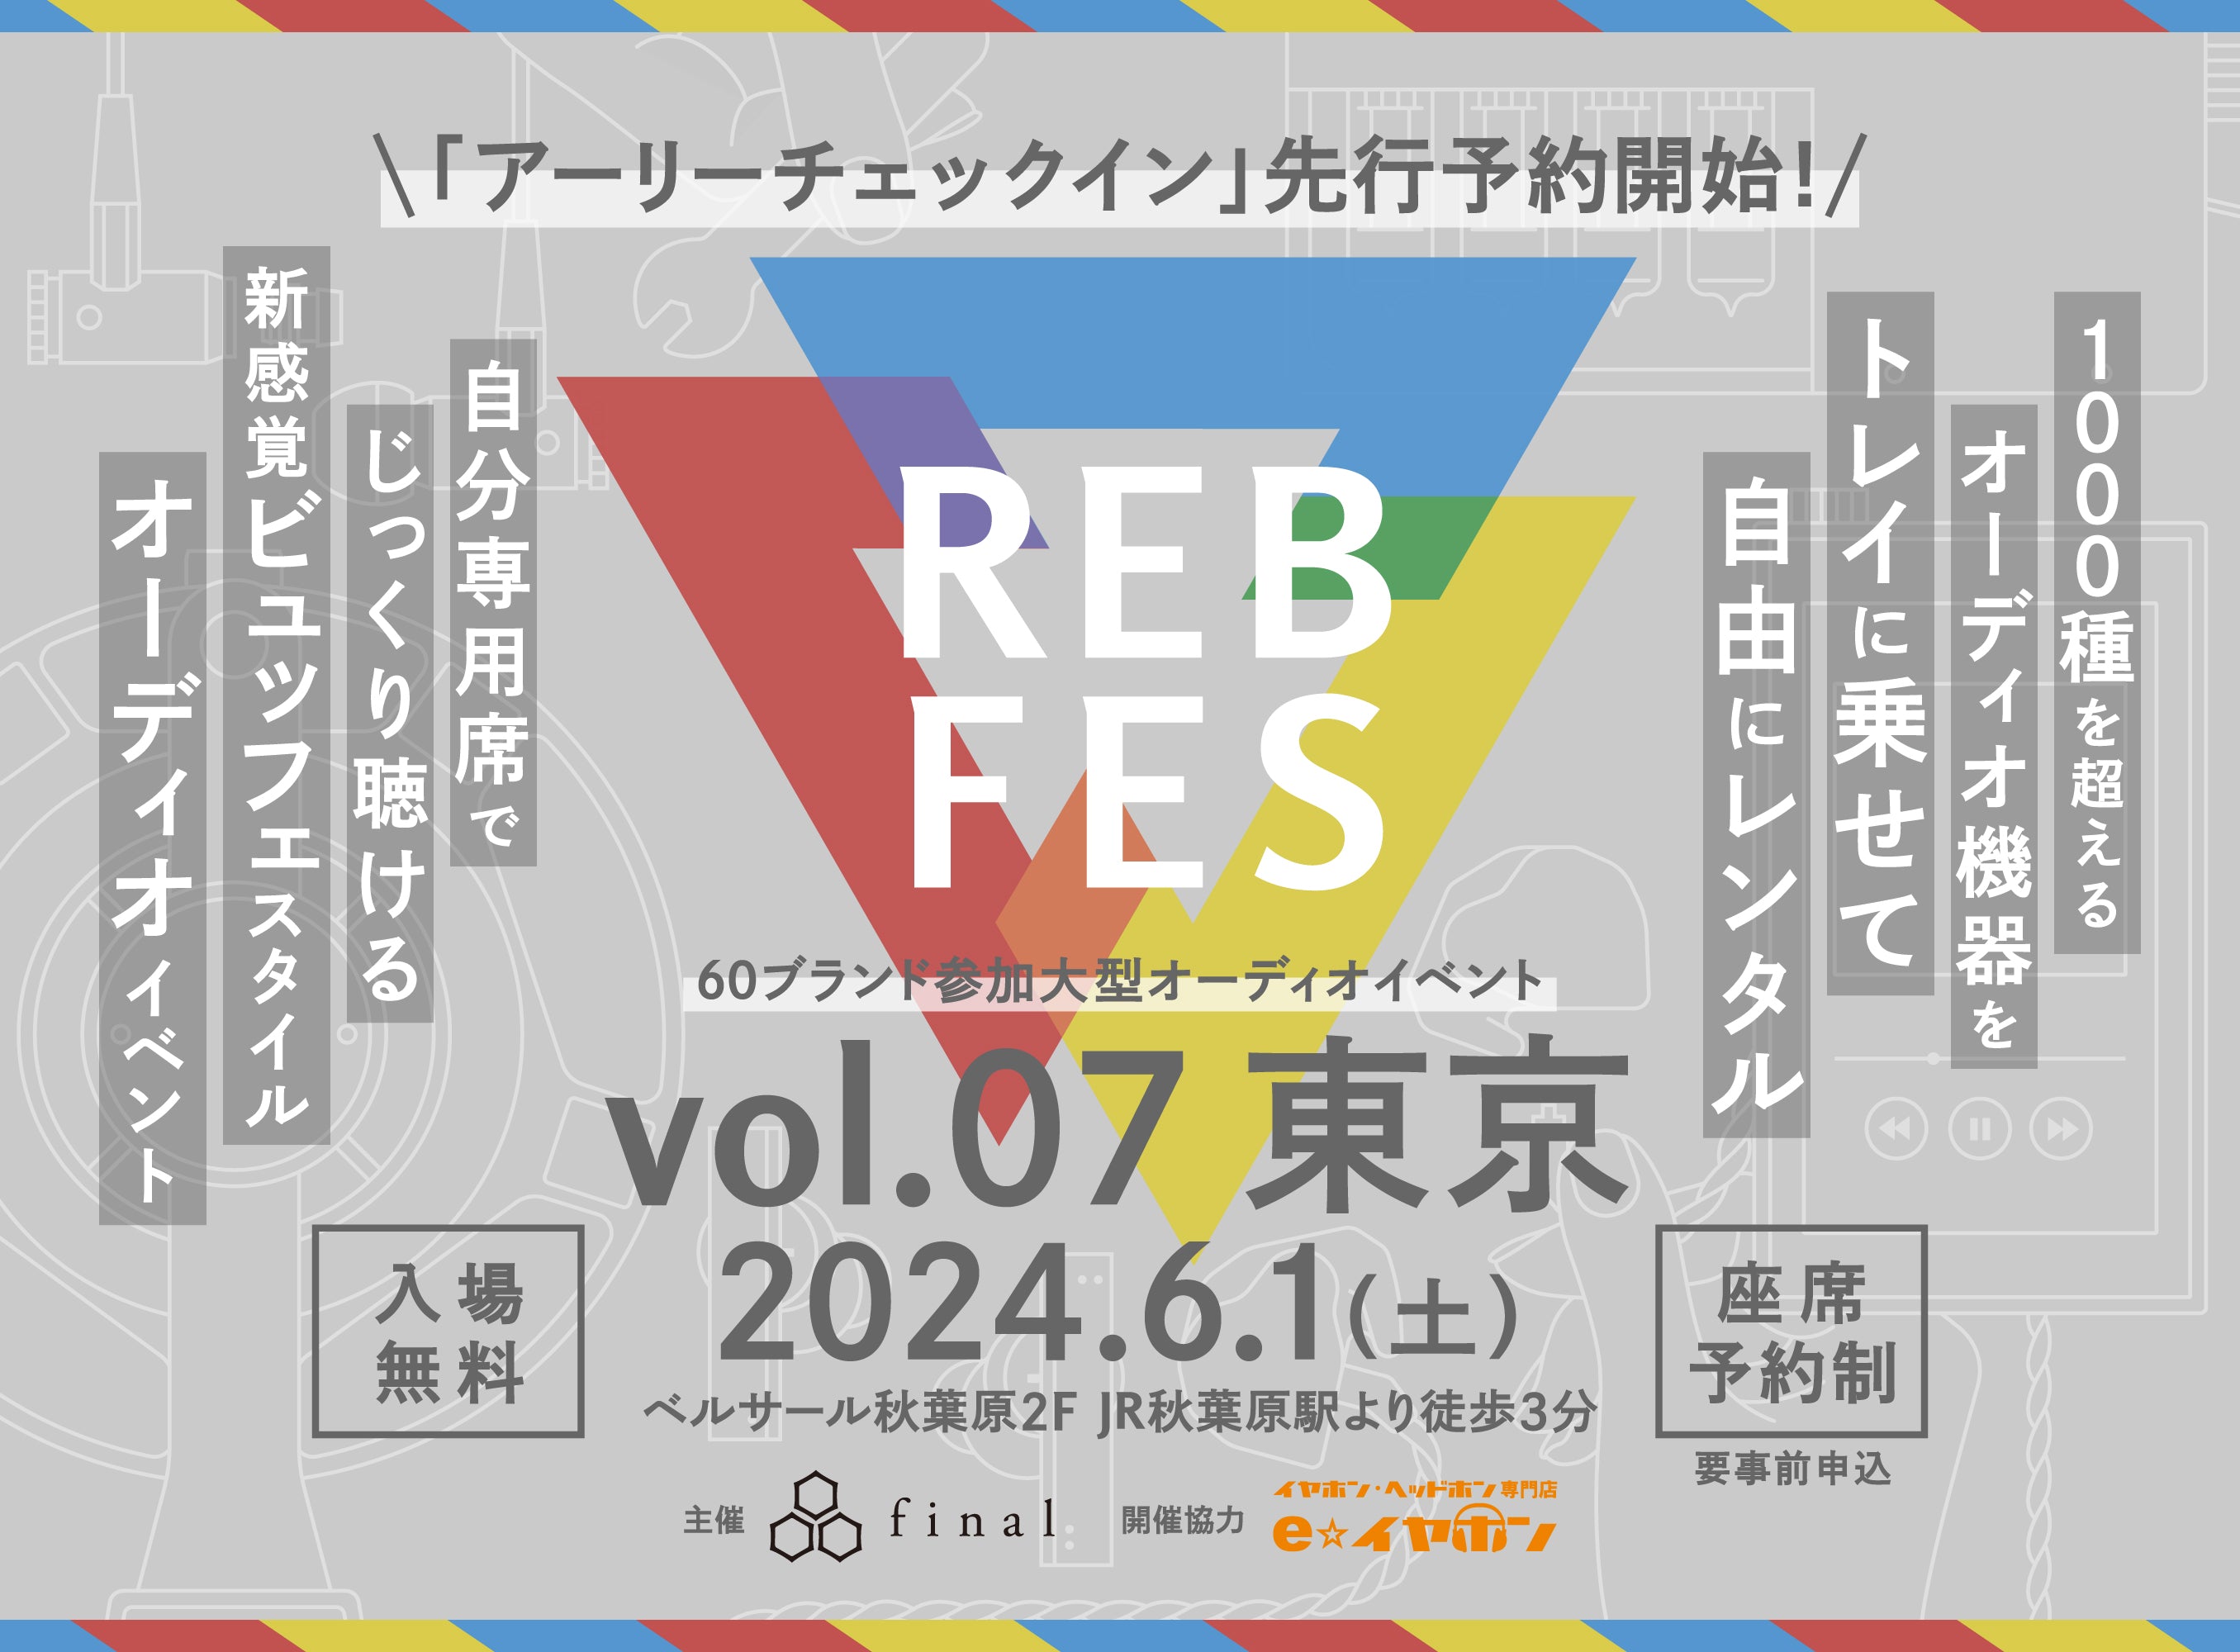 1000種を超えるオーディオ機器を自由に組み合わせて試聴できる新オーディオイベント「REB fes vol.07@東京」。「アーリーチェックイン」枠から座席予約申し込みがスタート！